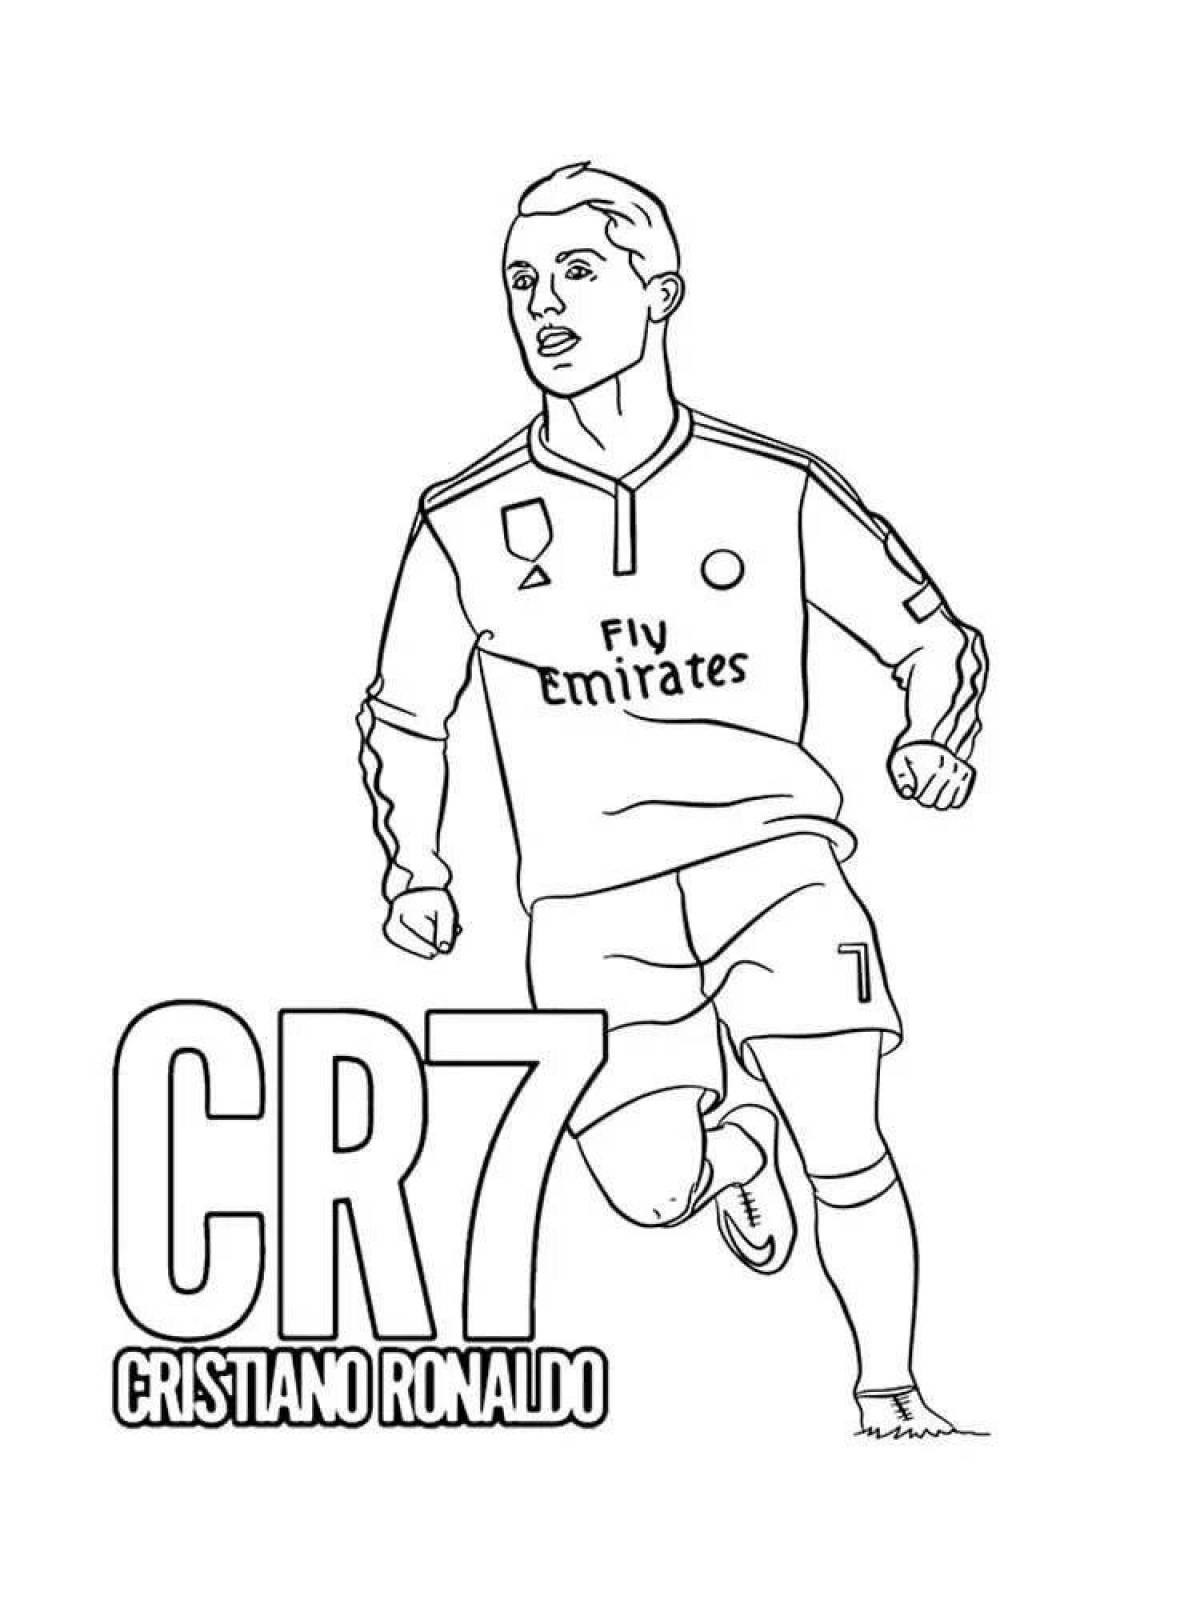 Cristiano Ronaldo #2